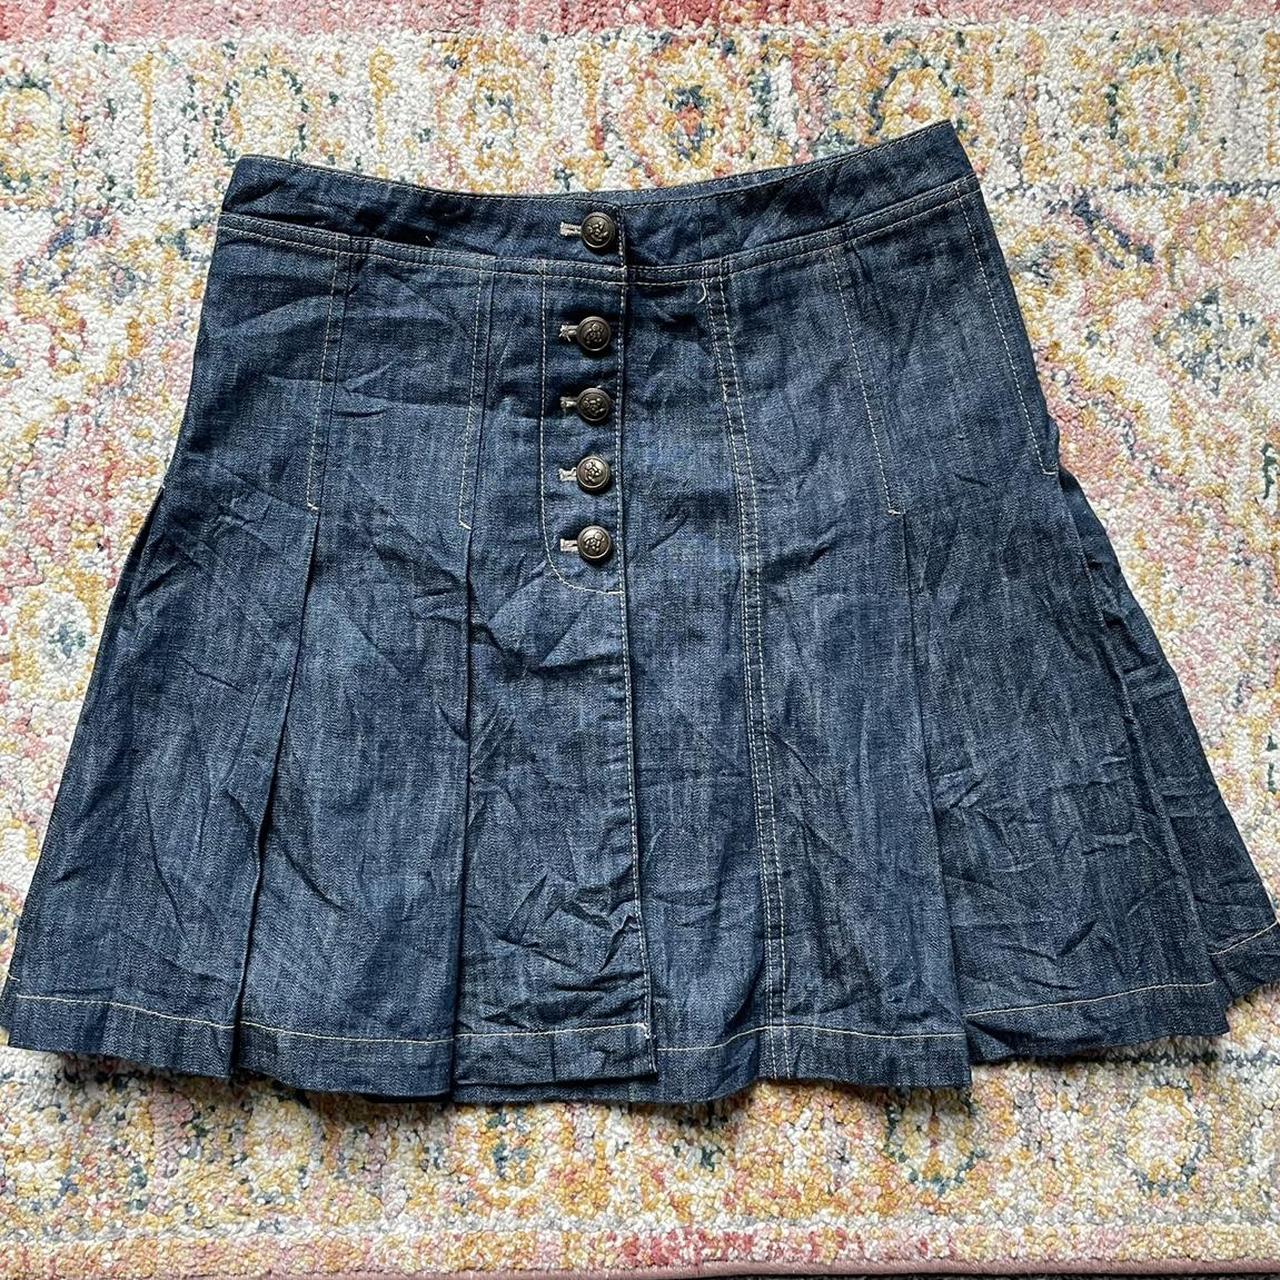 Rara pleated denim skirt 90s y2k vintage with the... - Depop